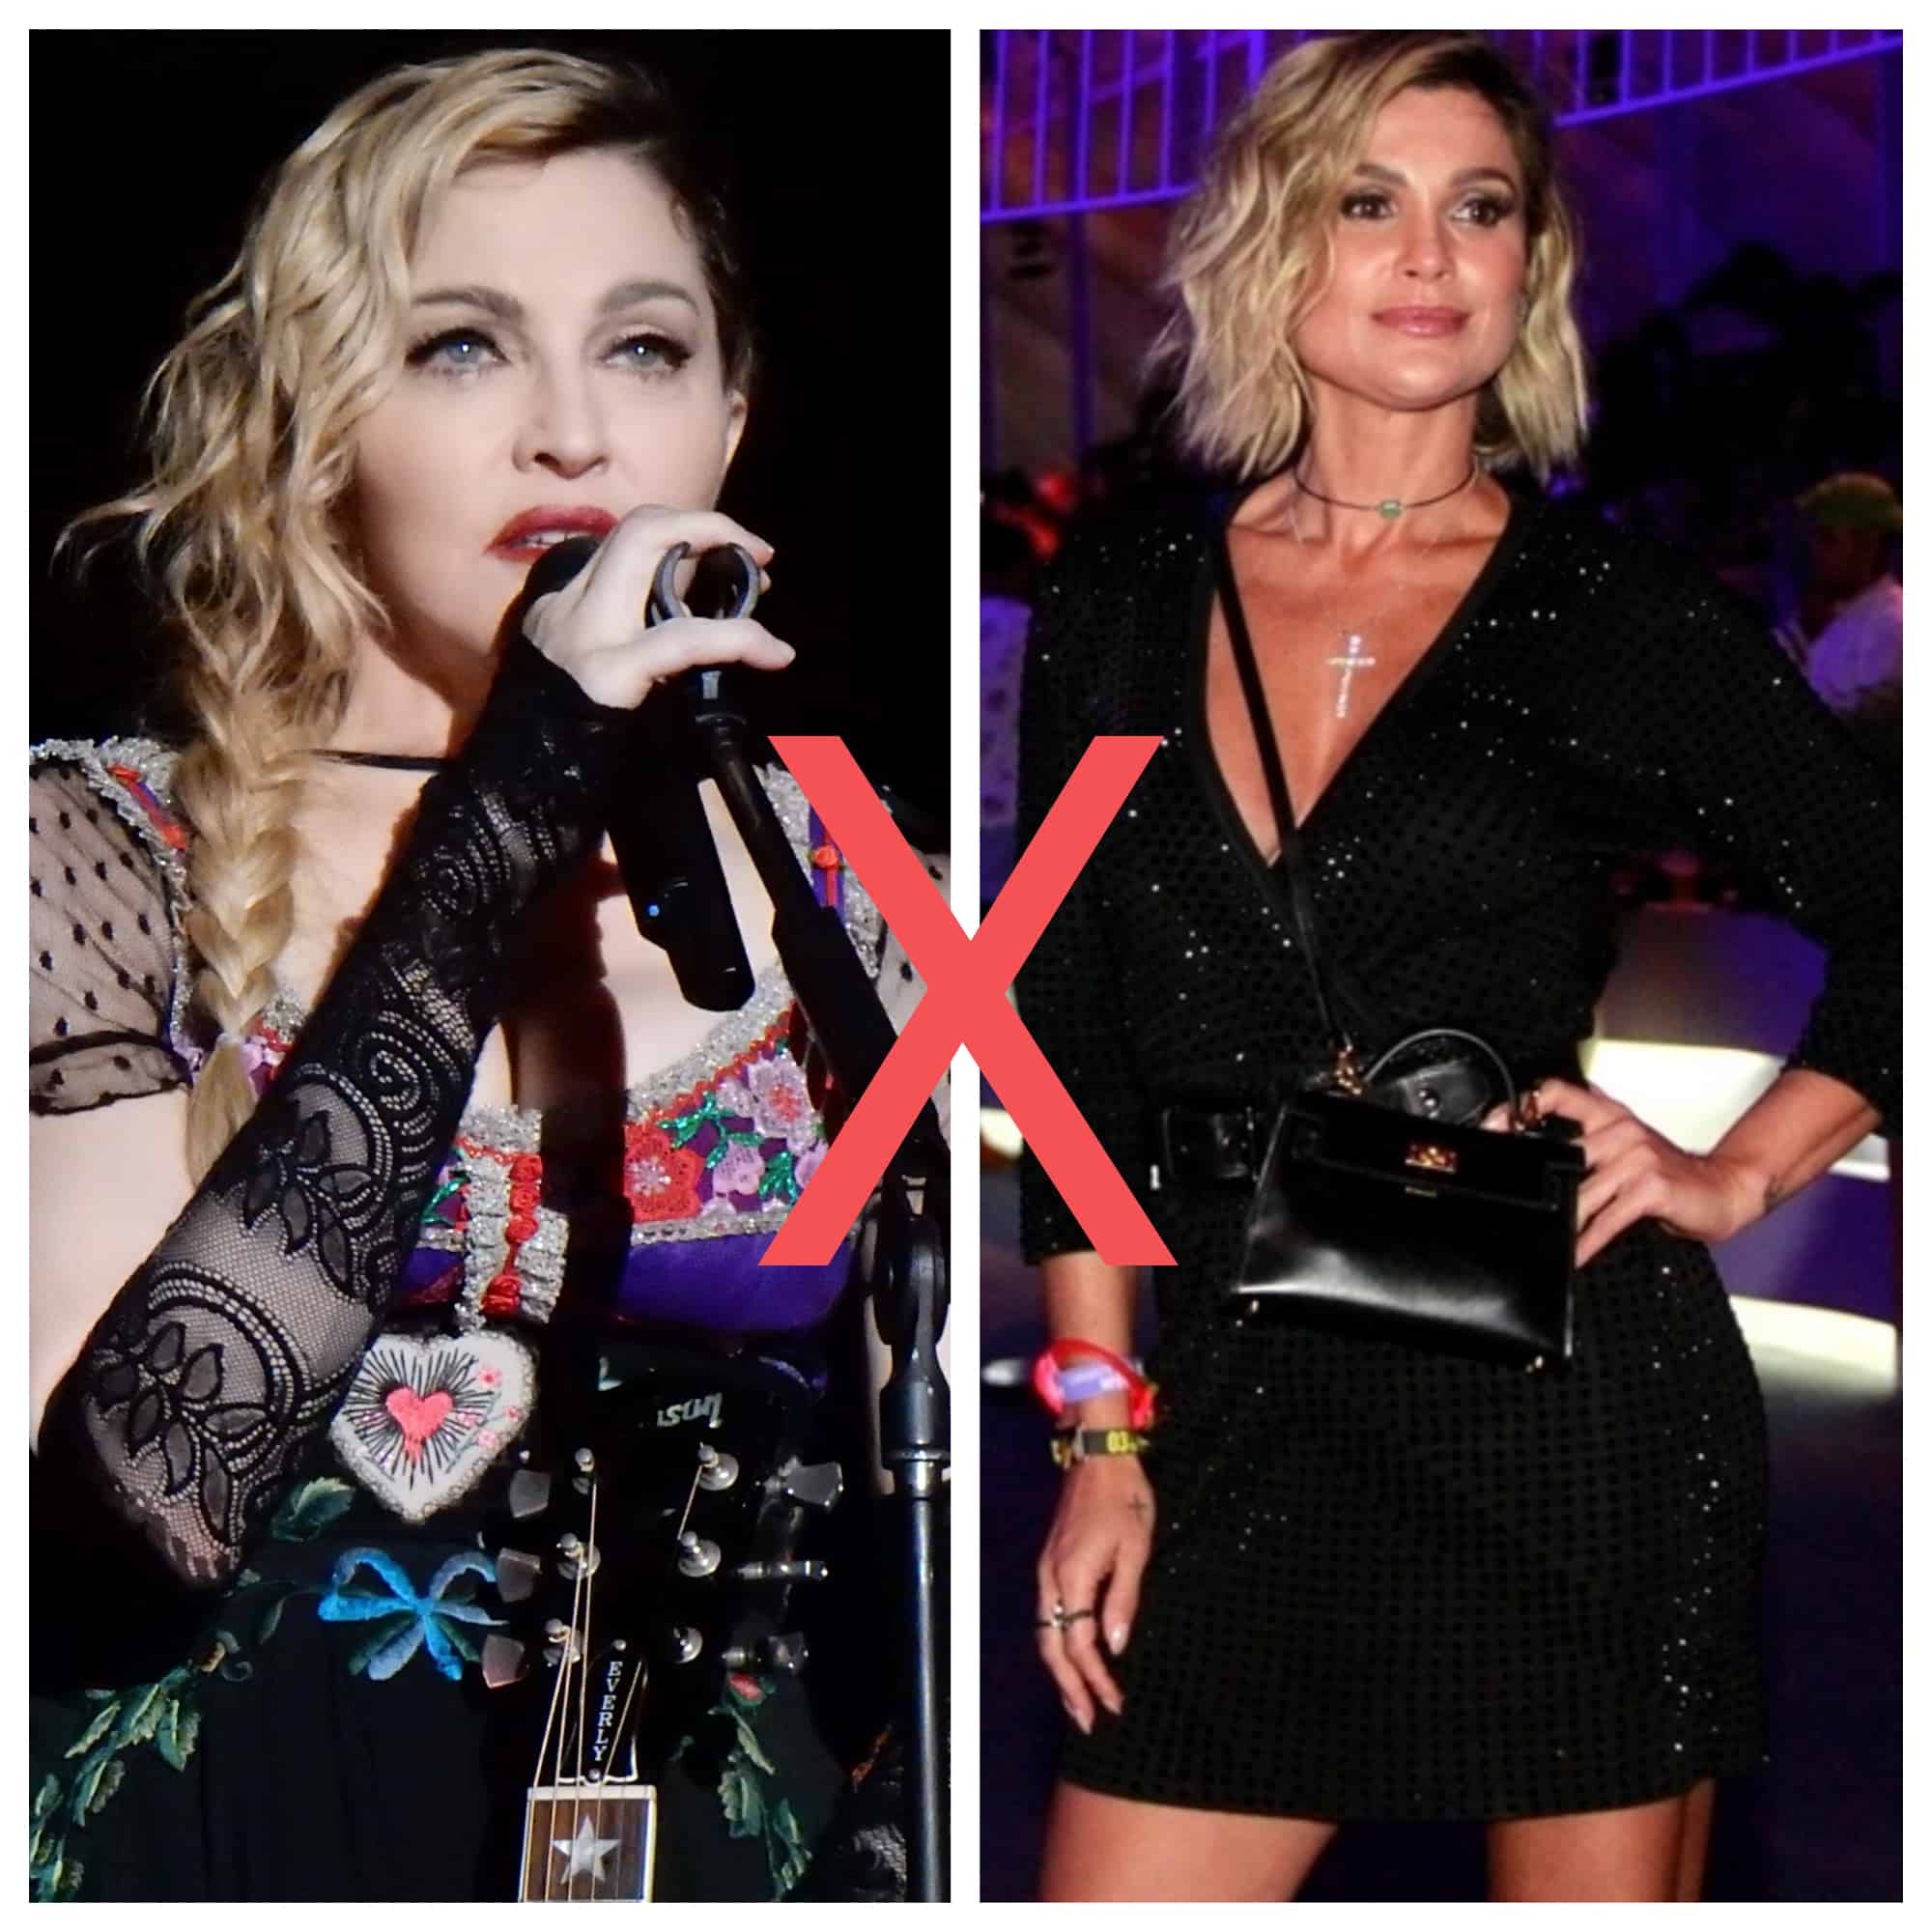 Flávia Alessandra posta foto rara e se compara a Madonna; seguidores comentam